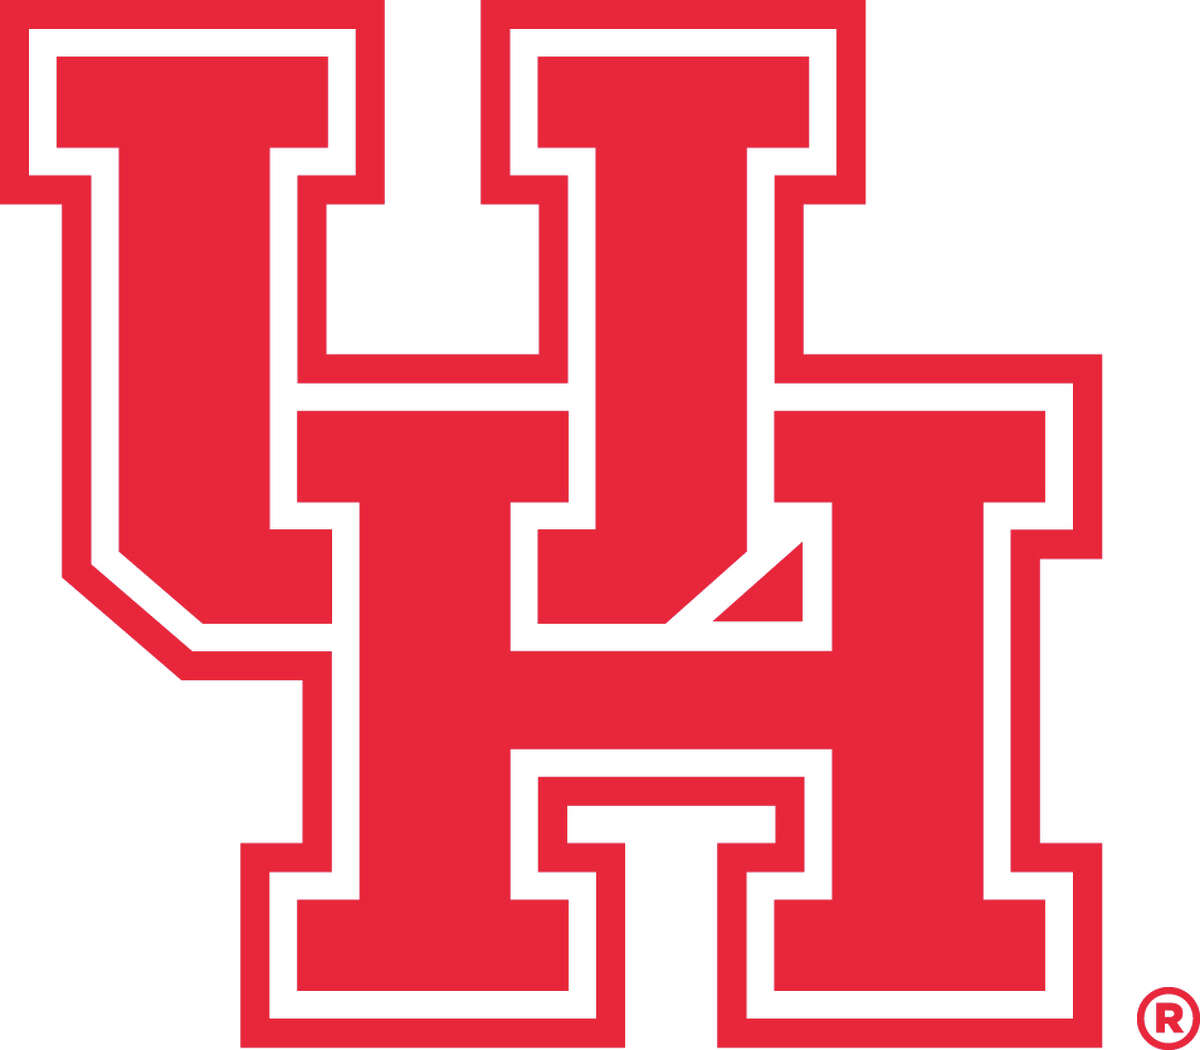 University of Houston Cougars logo, 2018.